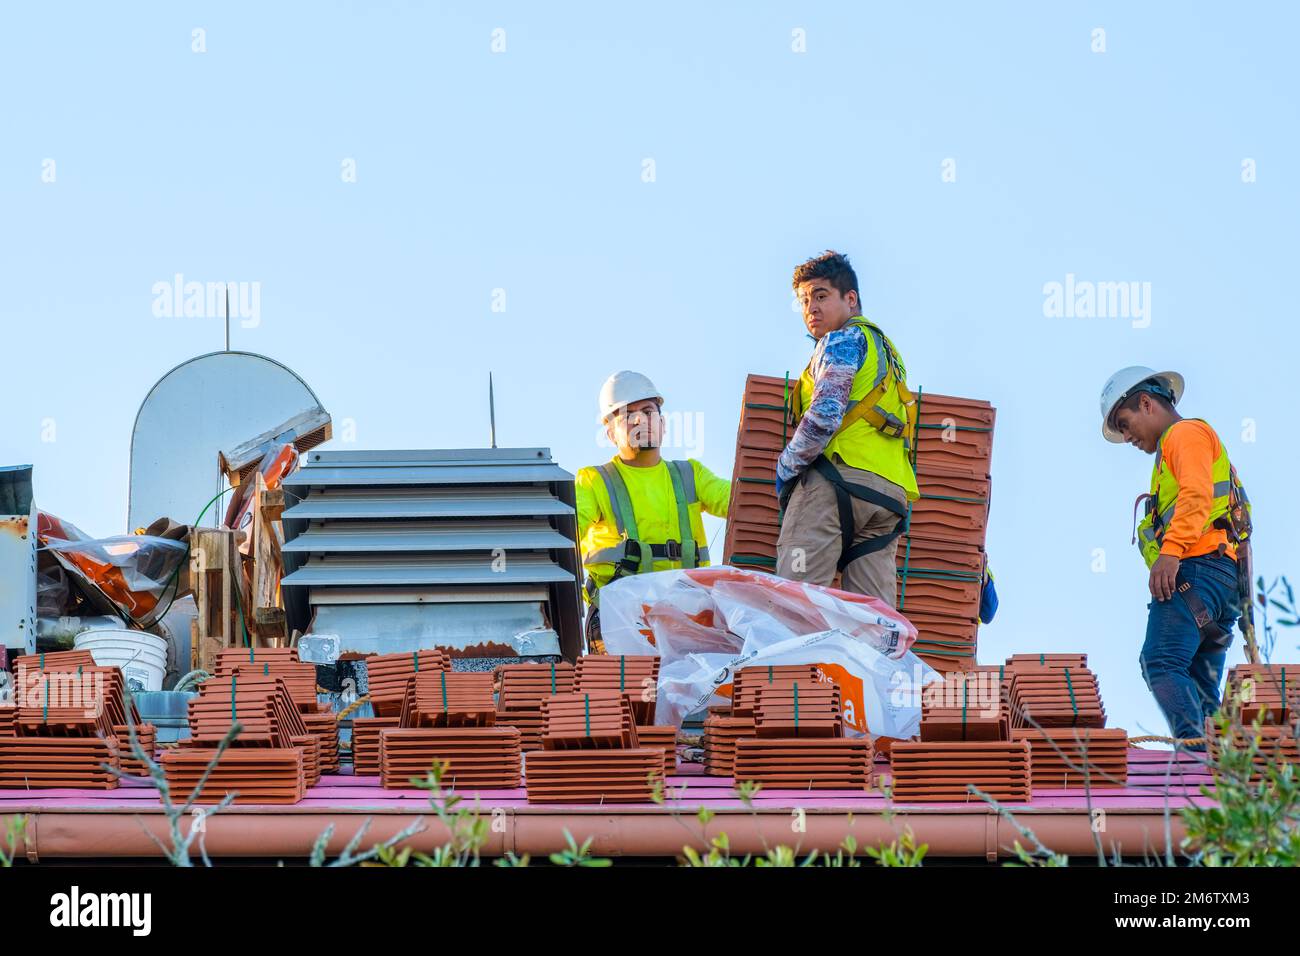 LA NOUVELLE-ORLÉANS, LA, États-Unis - 4 JANVIER 2023 : couvreurs et tuiles de toiture pendant la préparation pour la rénovation au sommet du bâtiment de l'université Tulane Banque D'Images